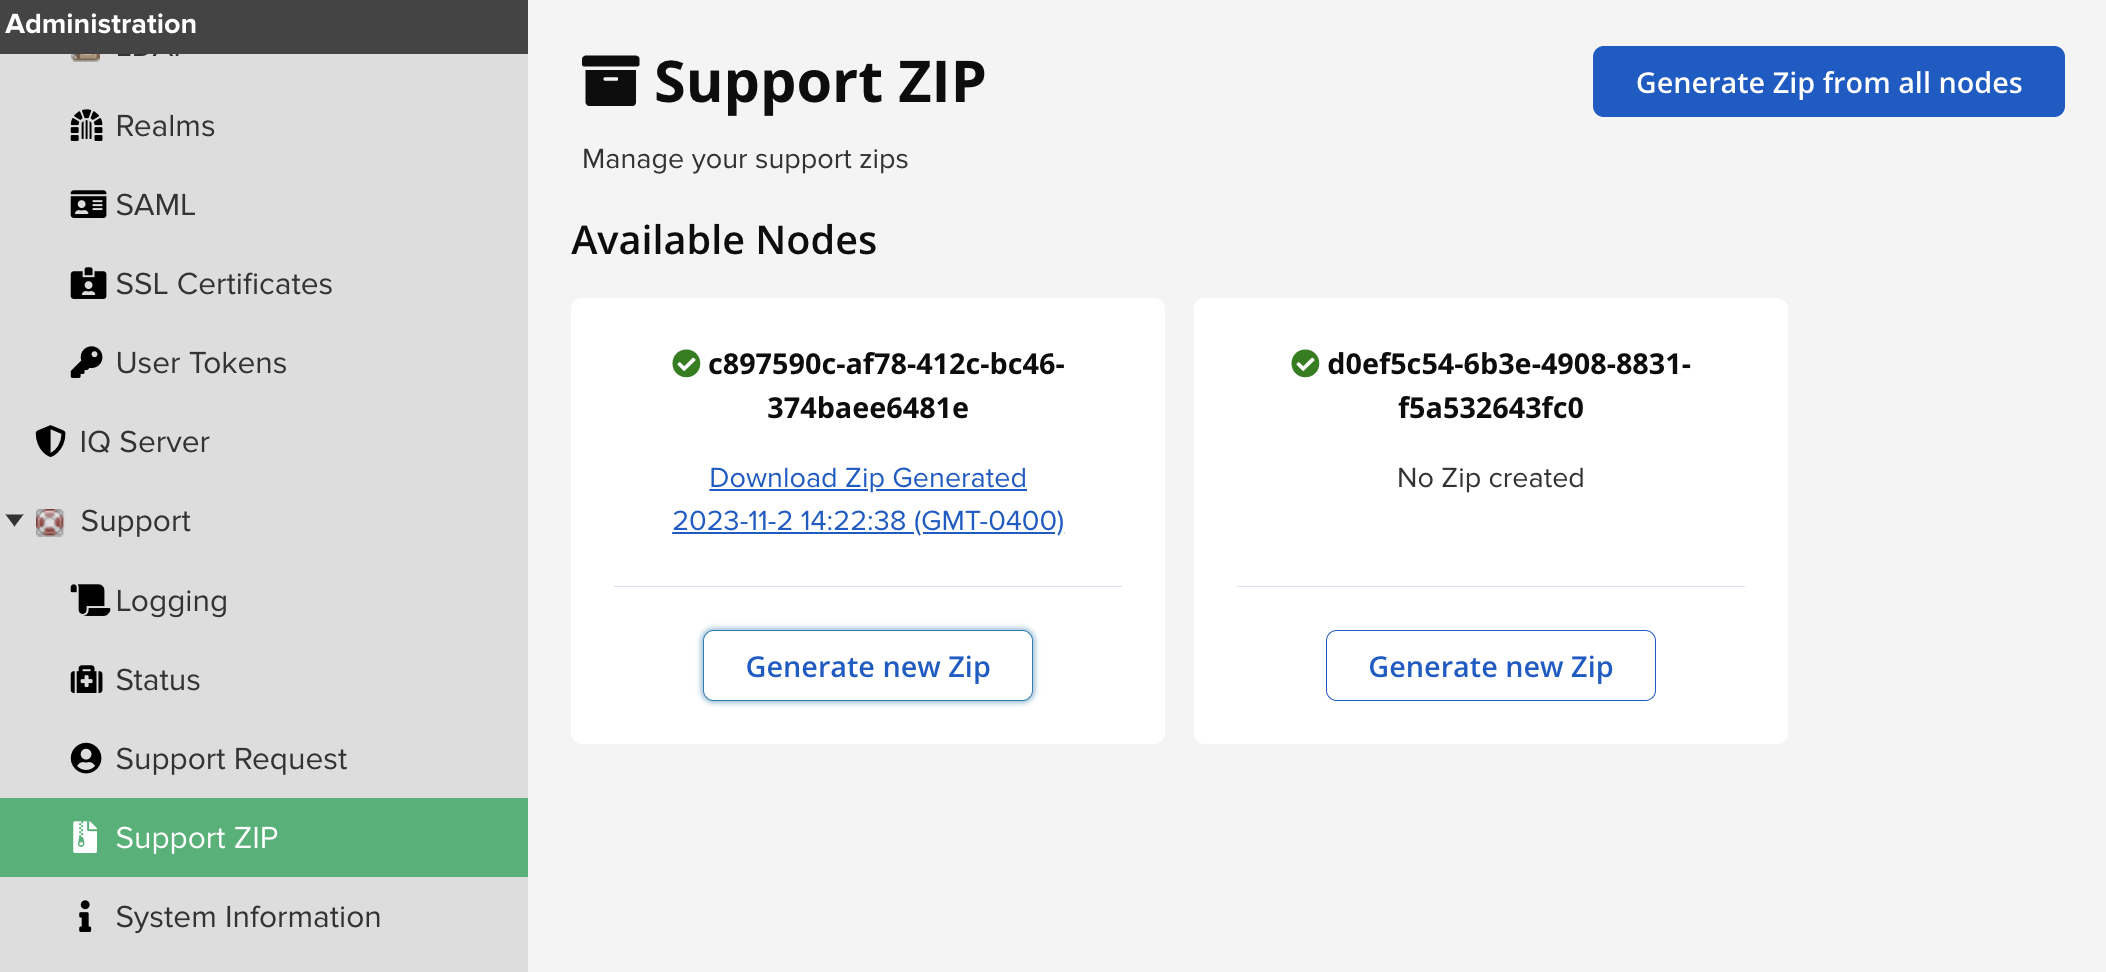 Support zip screen